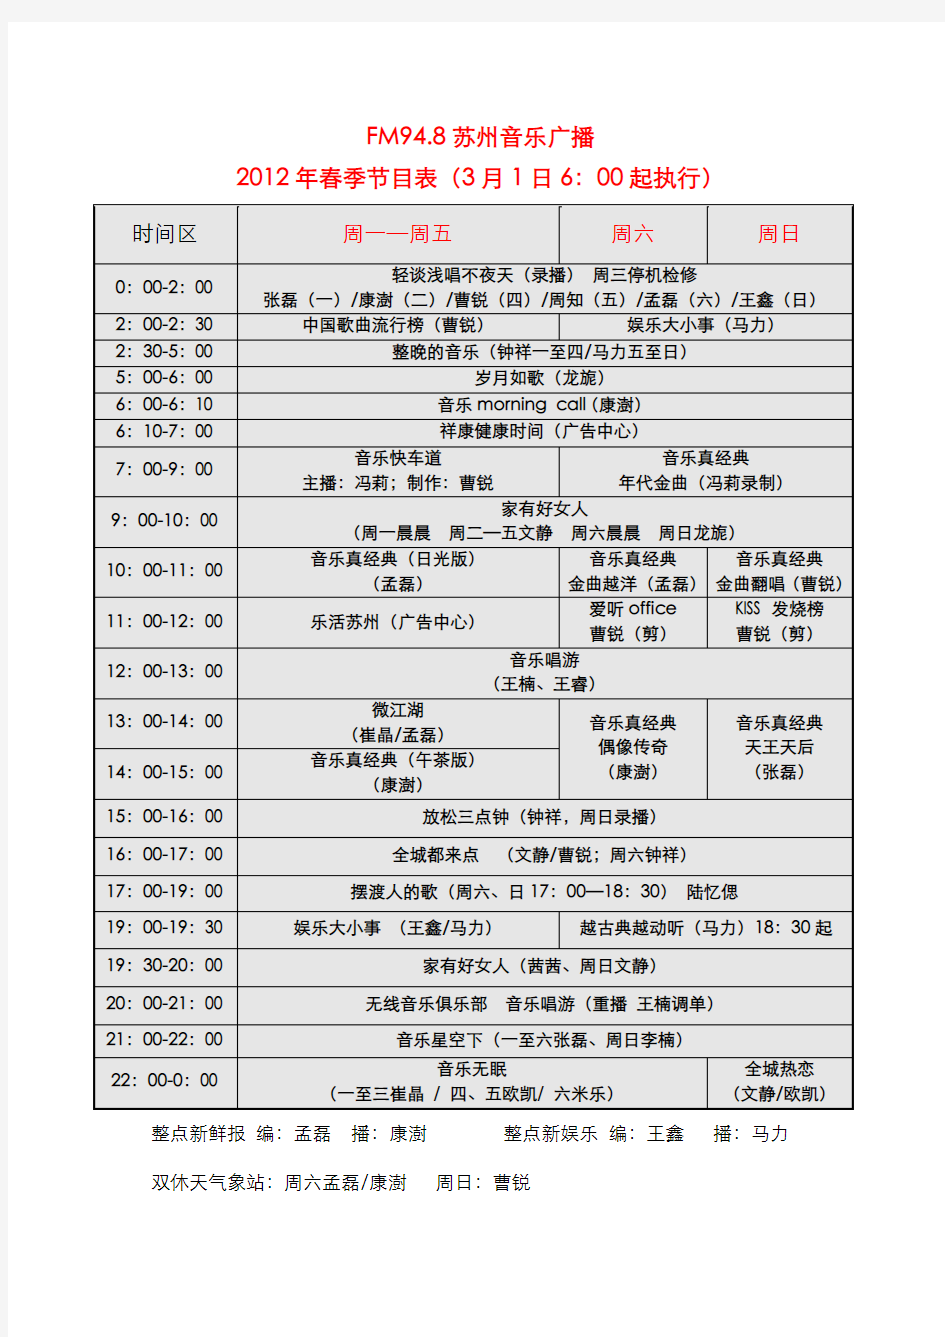 FM948苏州音乐广播2012新节目表 详细版